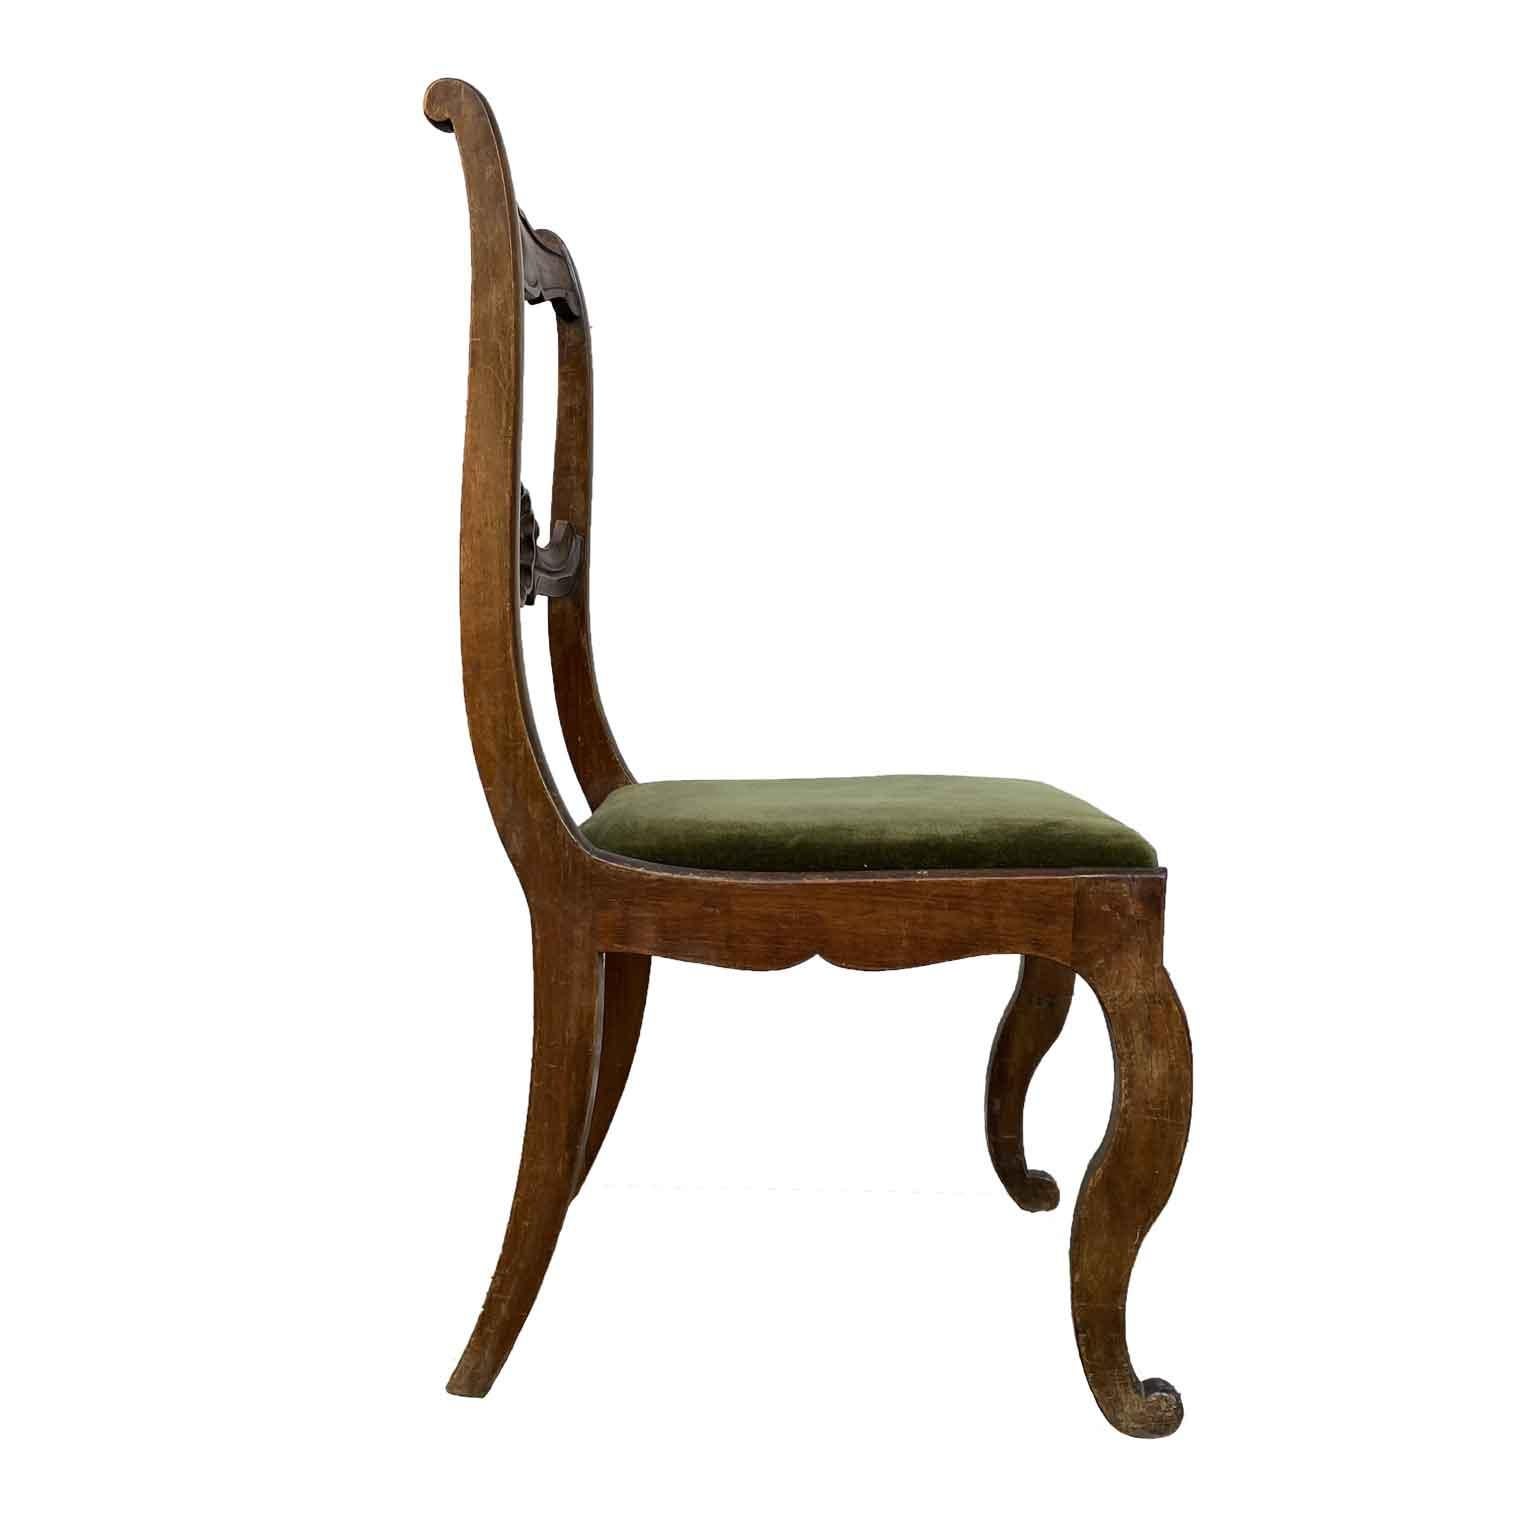 Sechs italienische geschnitzte Nussbaumstühle aus den späten 1800er Jahren mit einer zu erneuernden Sitzfläche aus grünem Samt. Die sechs Stühle sind in einem guten schreinerischen Zustand,  die Walnussstruktur ist solide, aber sie brauchen eine 